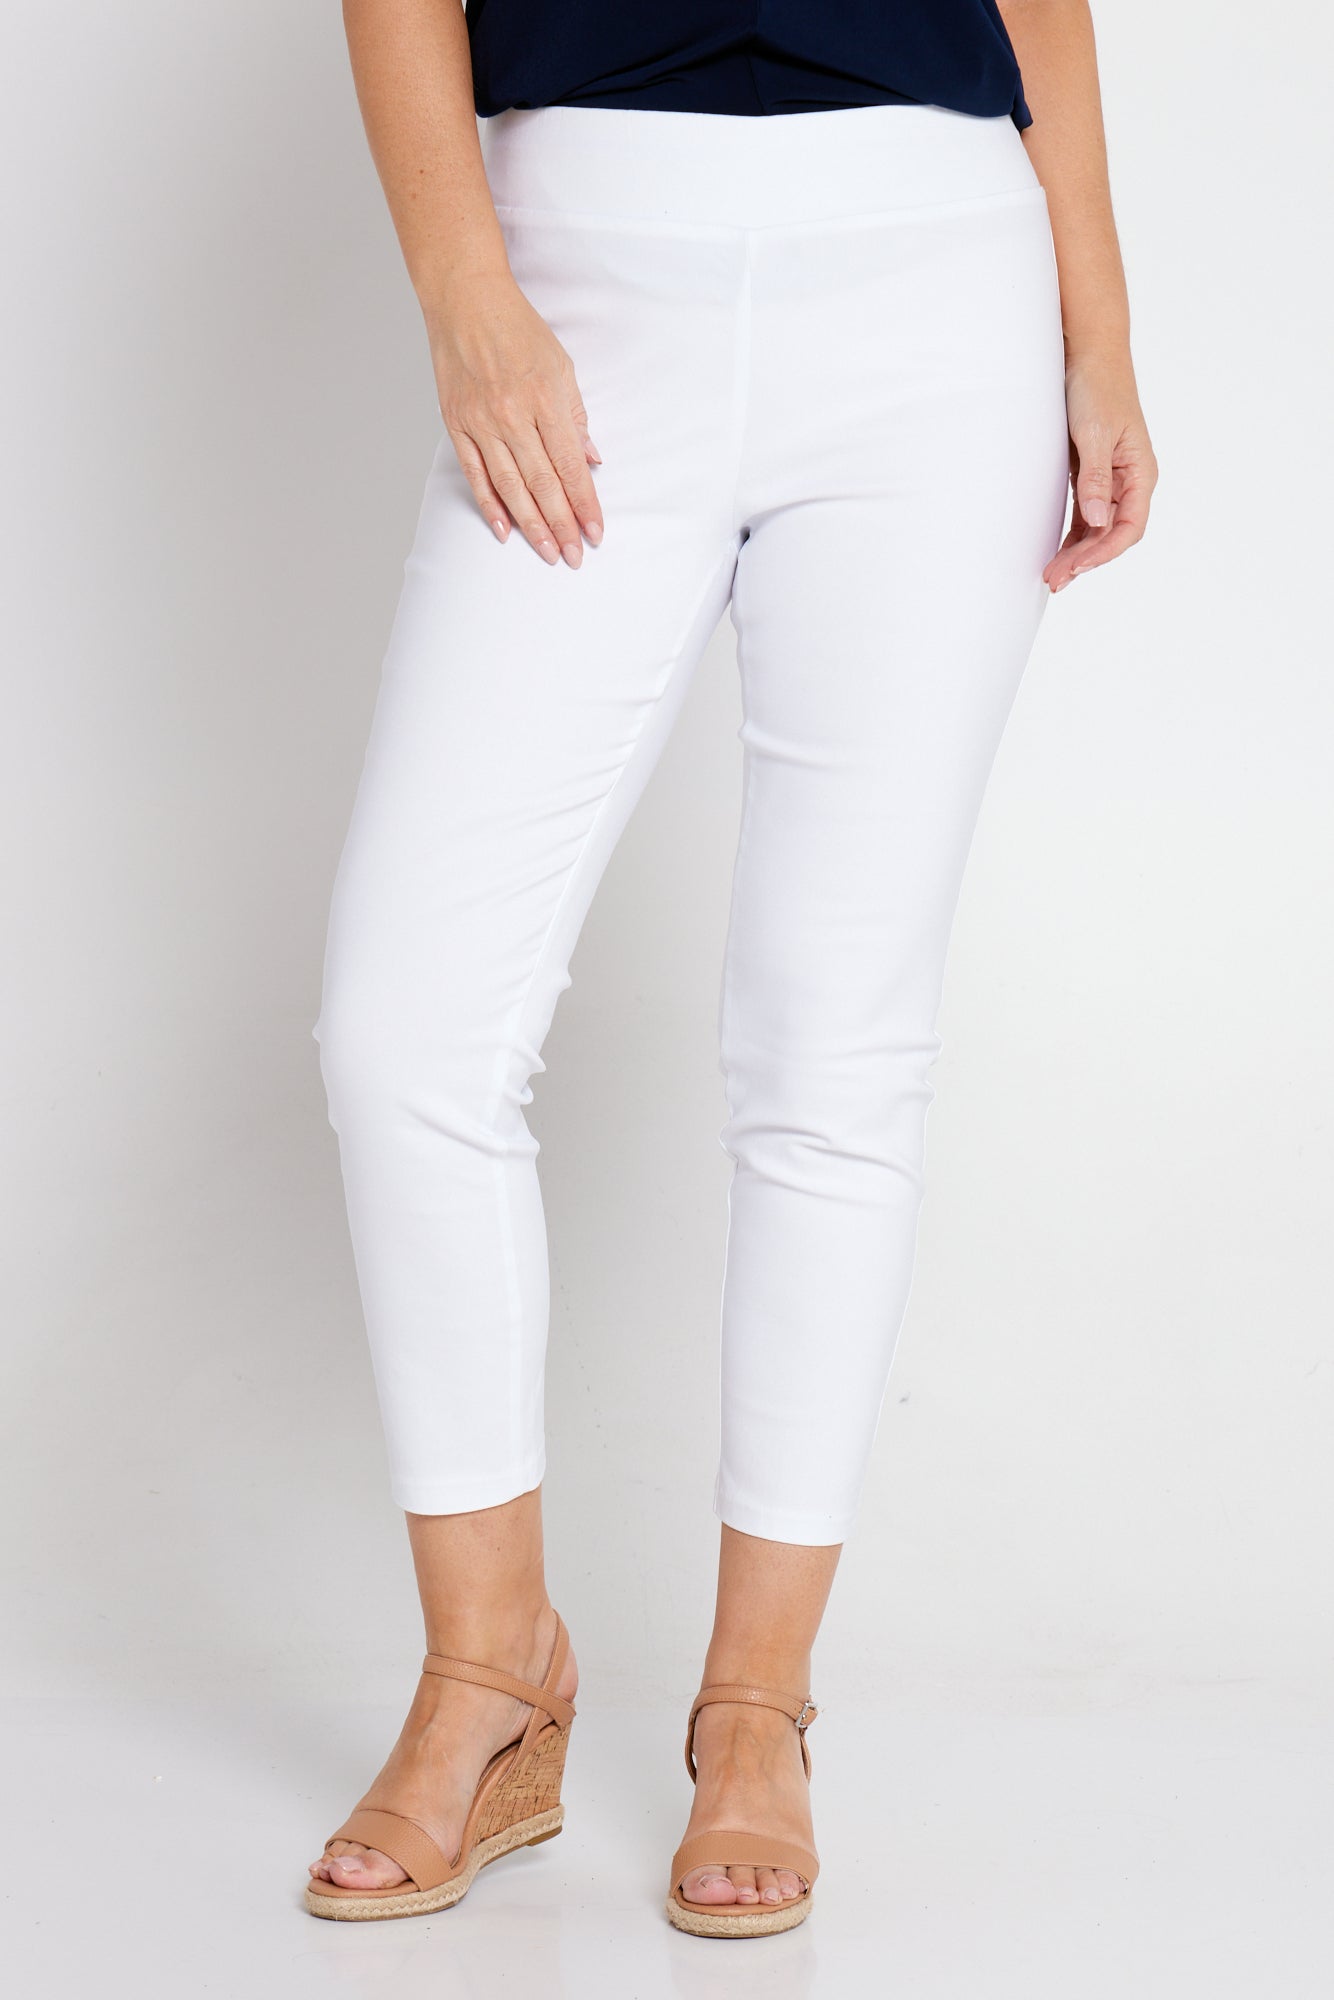 Moira Bengaline Pants - White – TULIO Fashion